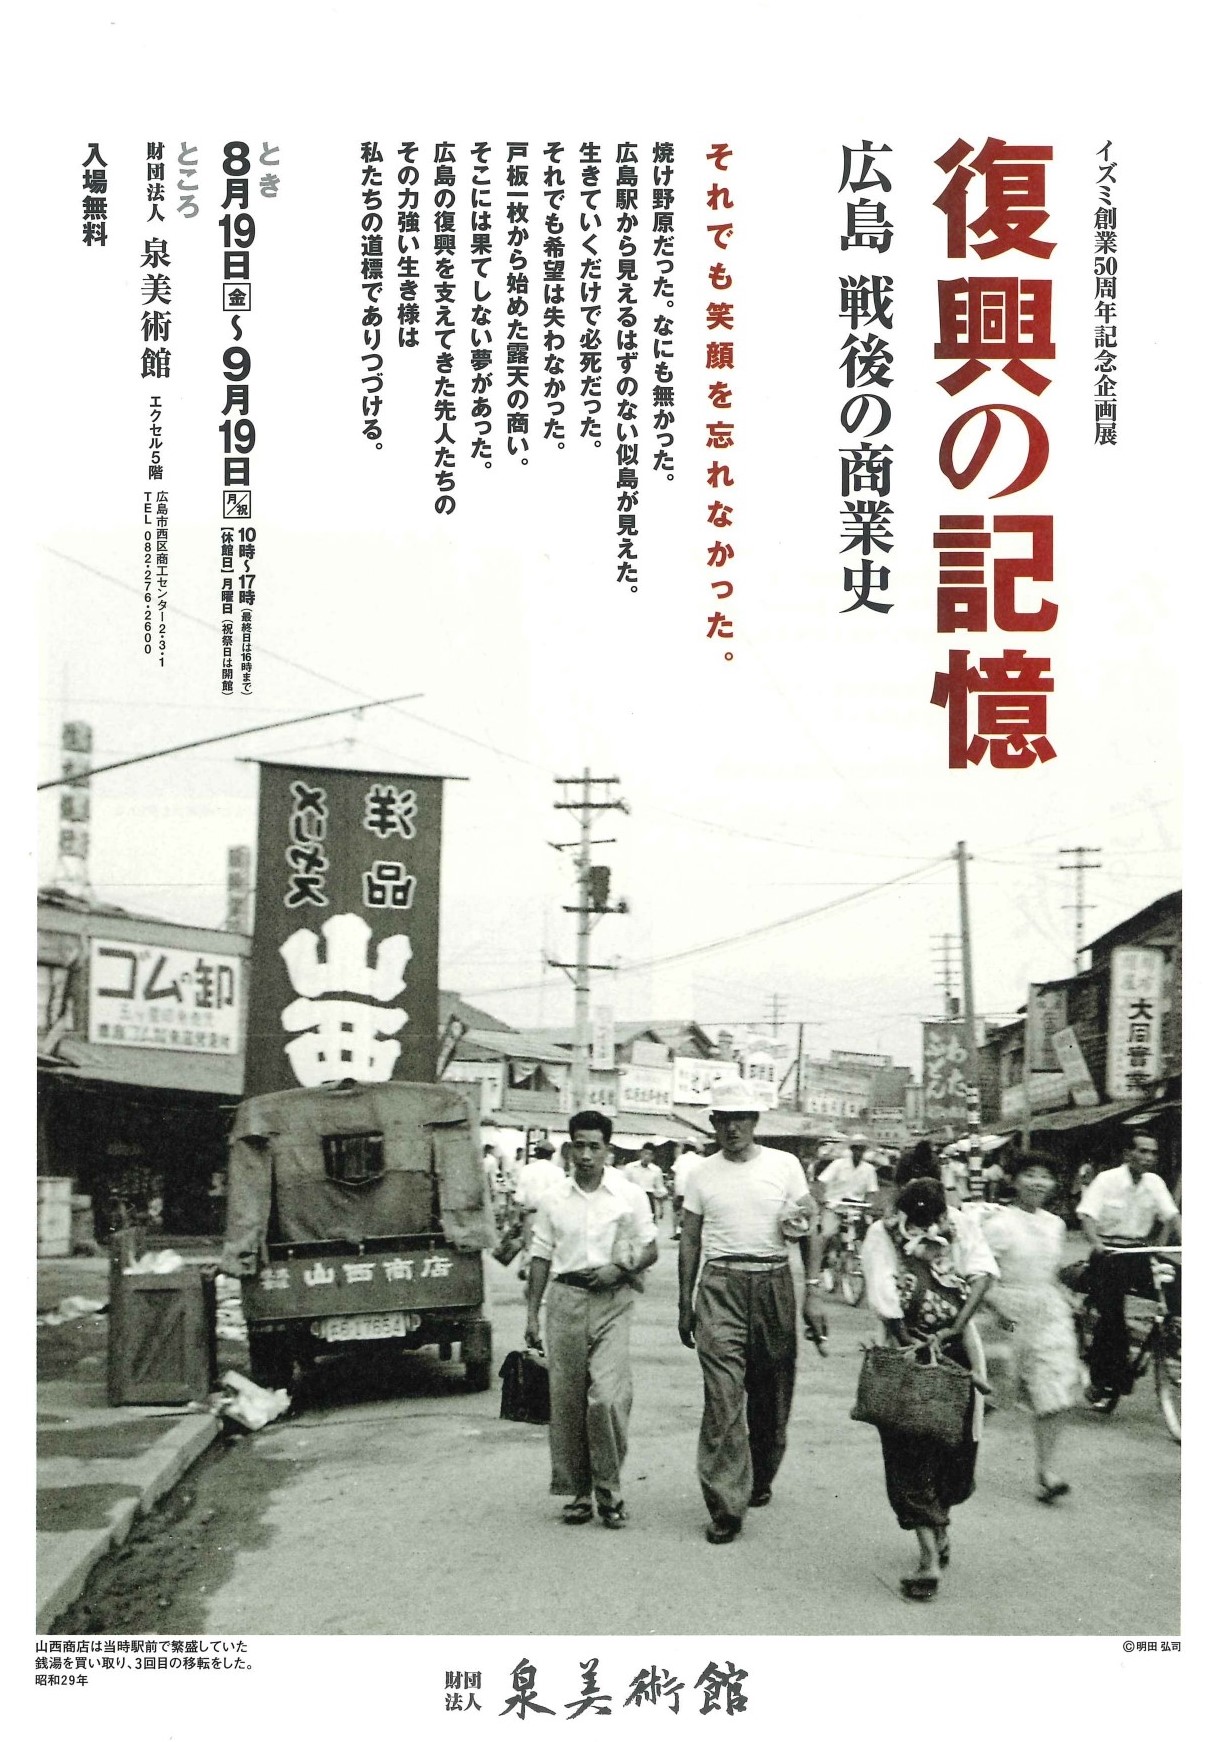 イズミ創業50周年記念企画展 復興の記憶－広島 戦後の商業史フライヤー